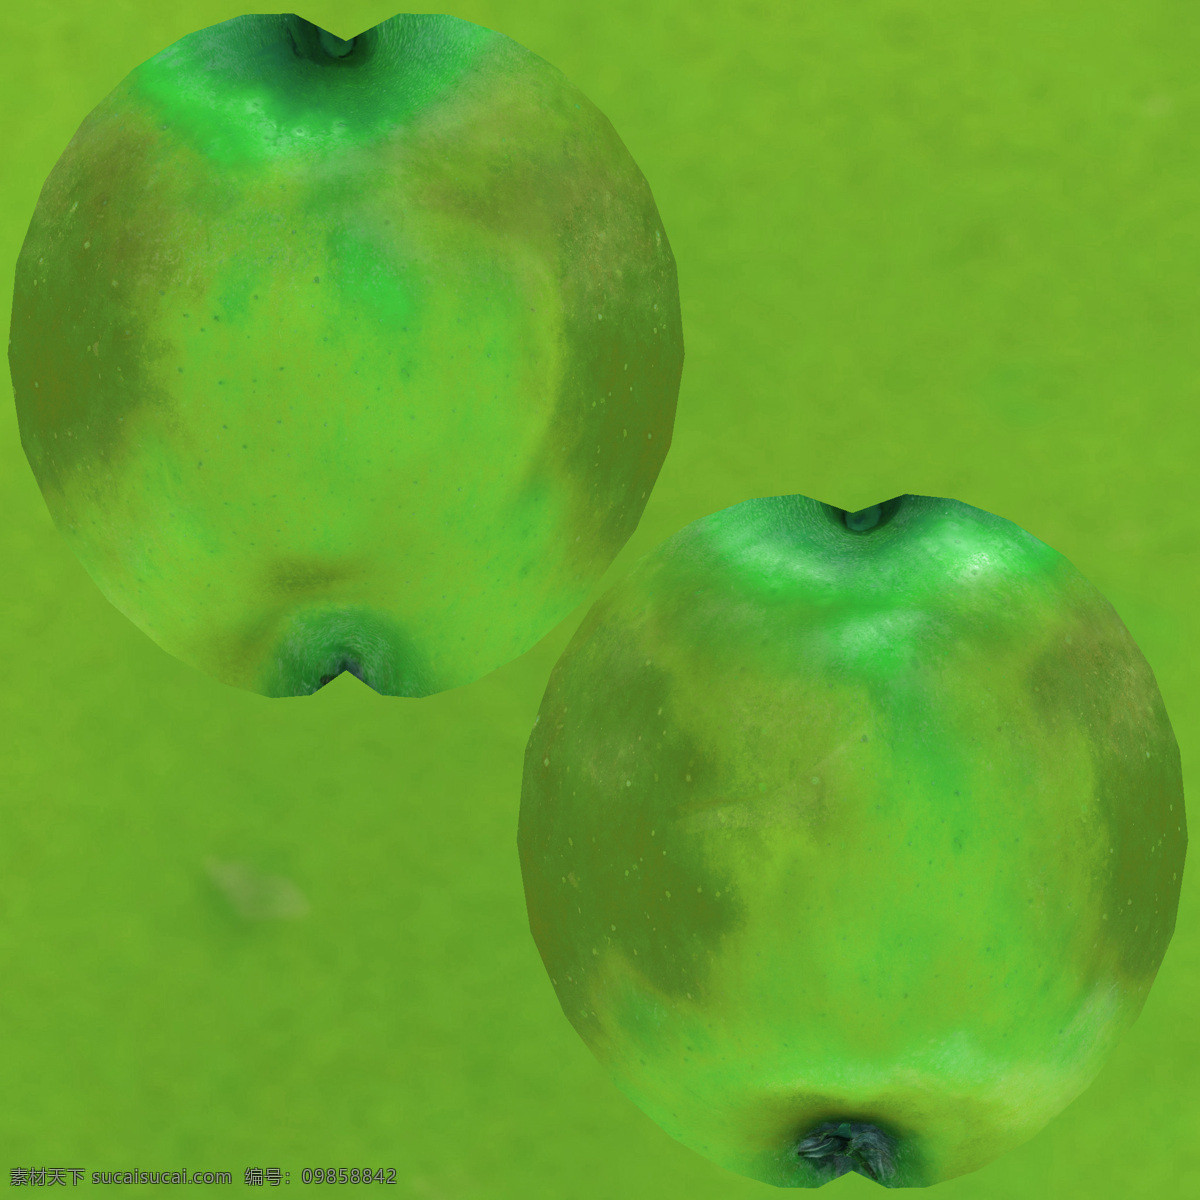 水果 类 货架 模型 超市 苹果 食品 3d模型 商品 3d渲染 模型素材